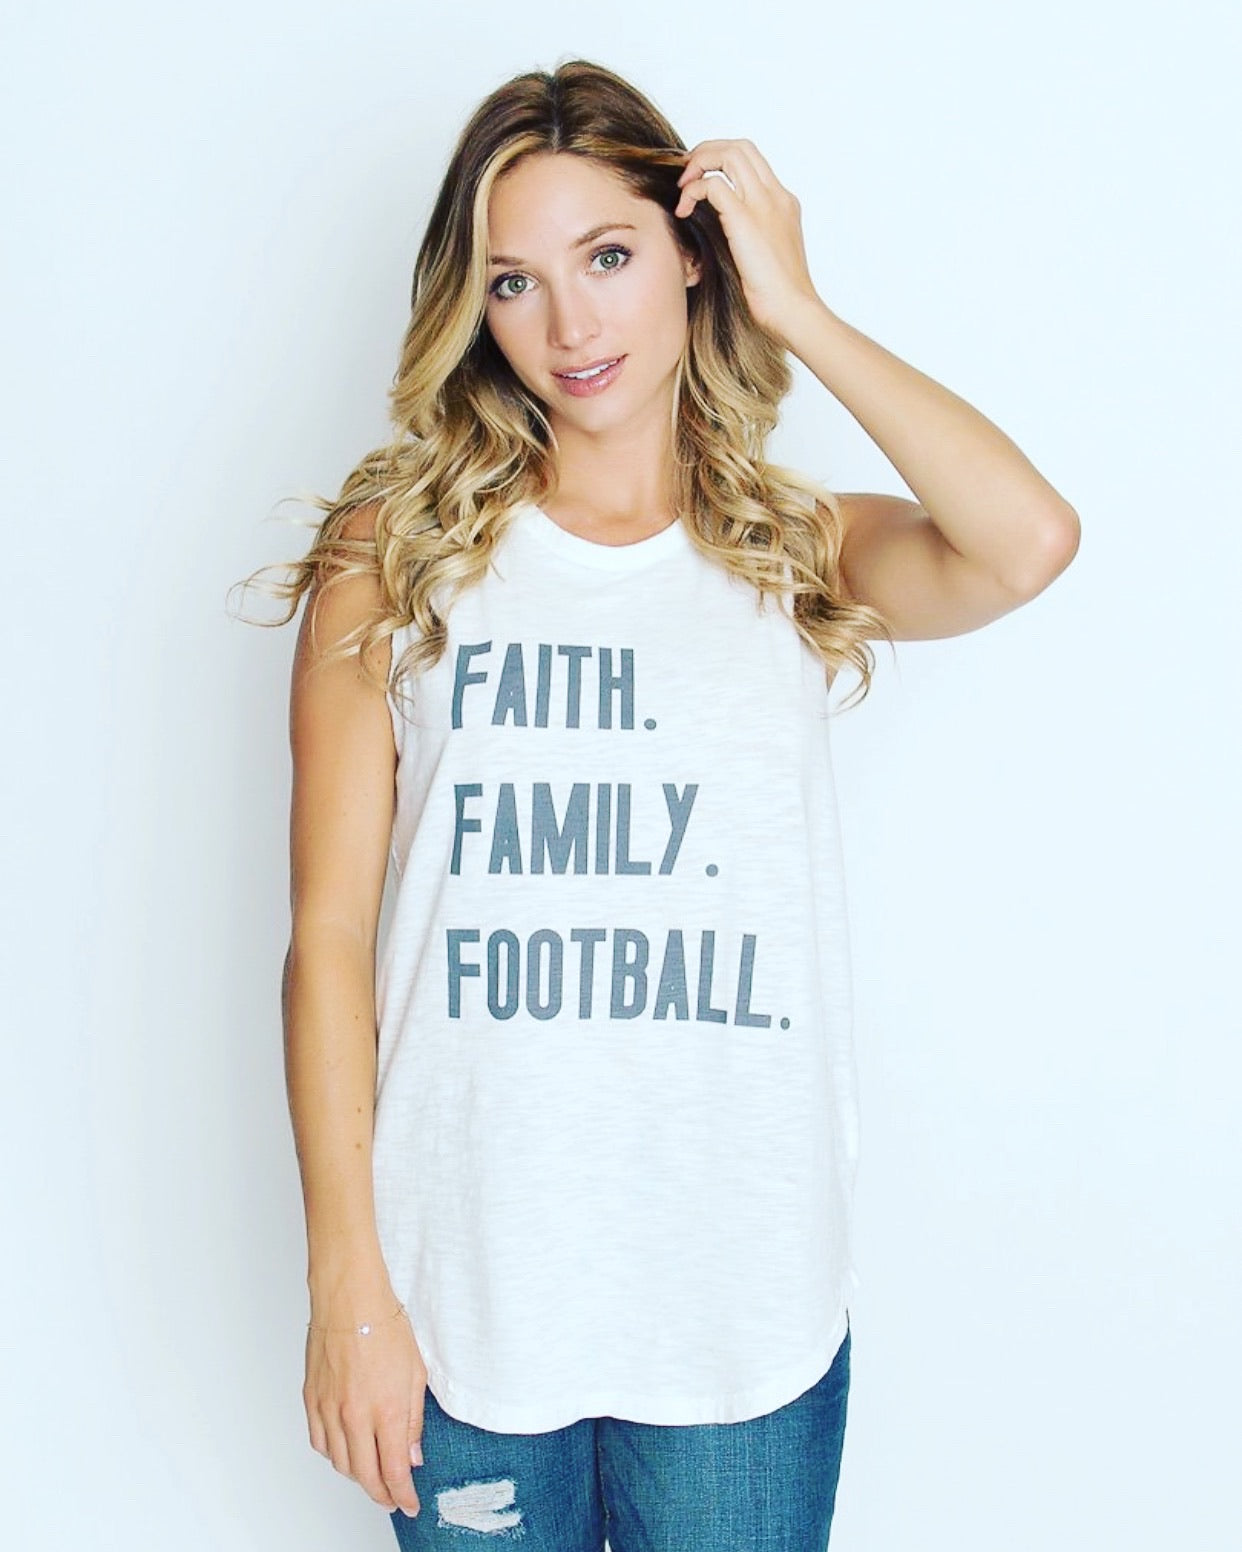 * Faith. Family. Football